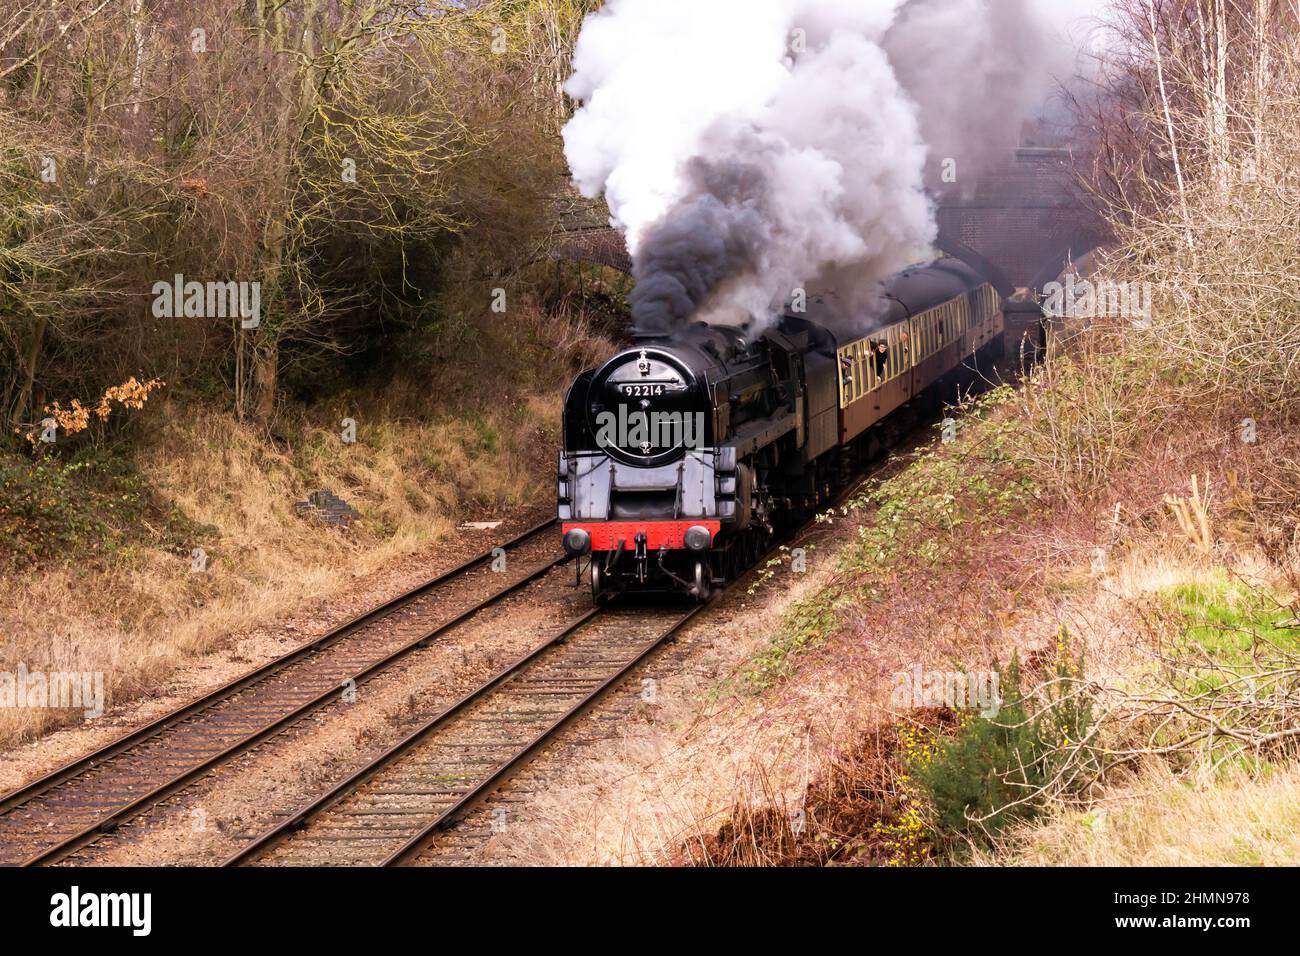 Train de voyageurs à vapeur en route vers Quorn depuis Loughborough Banque D'Images